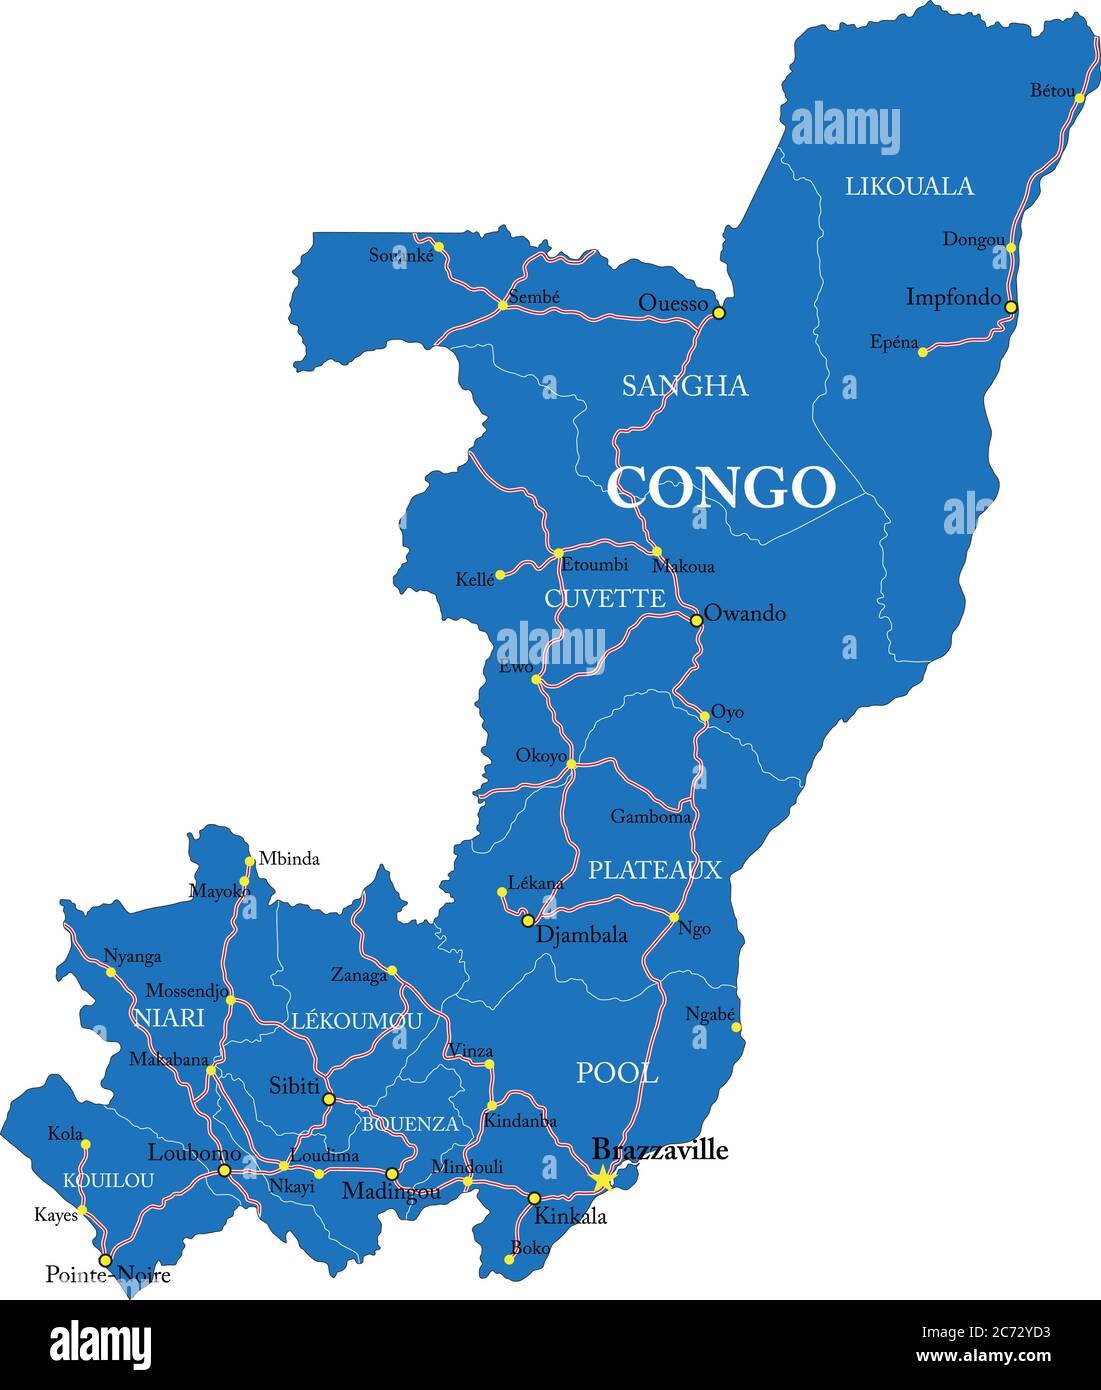 Carte Vectorielle Detaillee De La Republique Du Congo Avec Frontieres Nationales Noms De Comte Routes Principales Et Silhouette D Etat Tres Detaillee 2c72yd3 